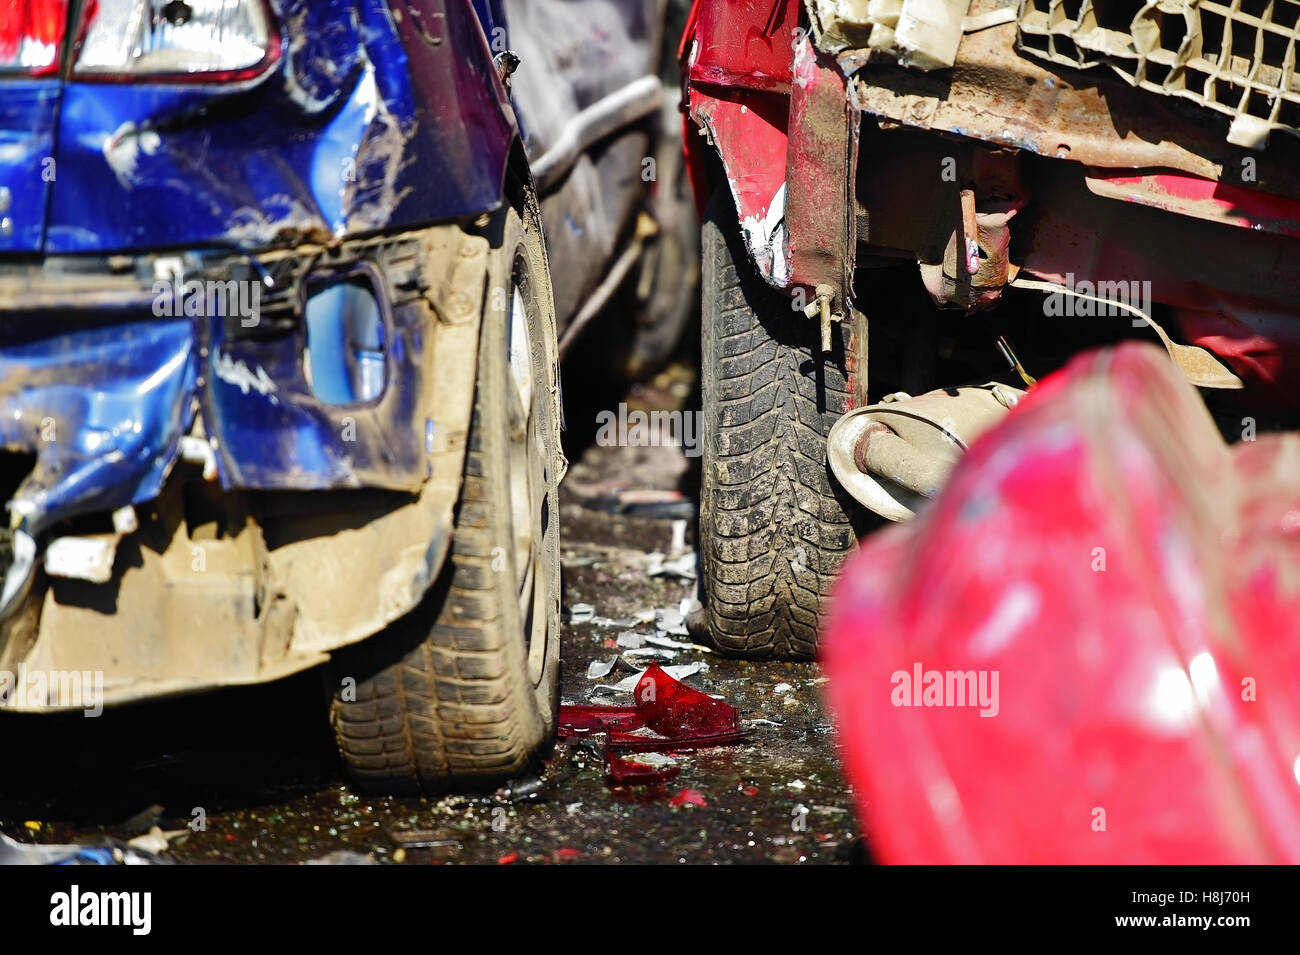 Détail de voitures endommagées après accident grave Banque D'Images